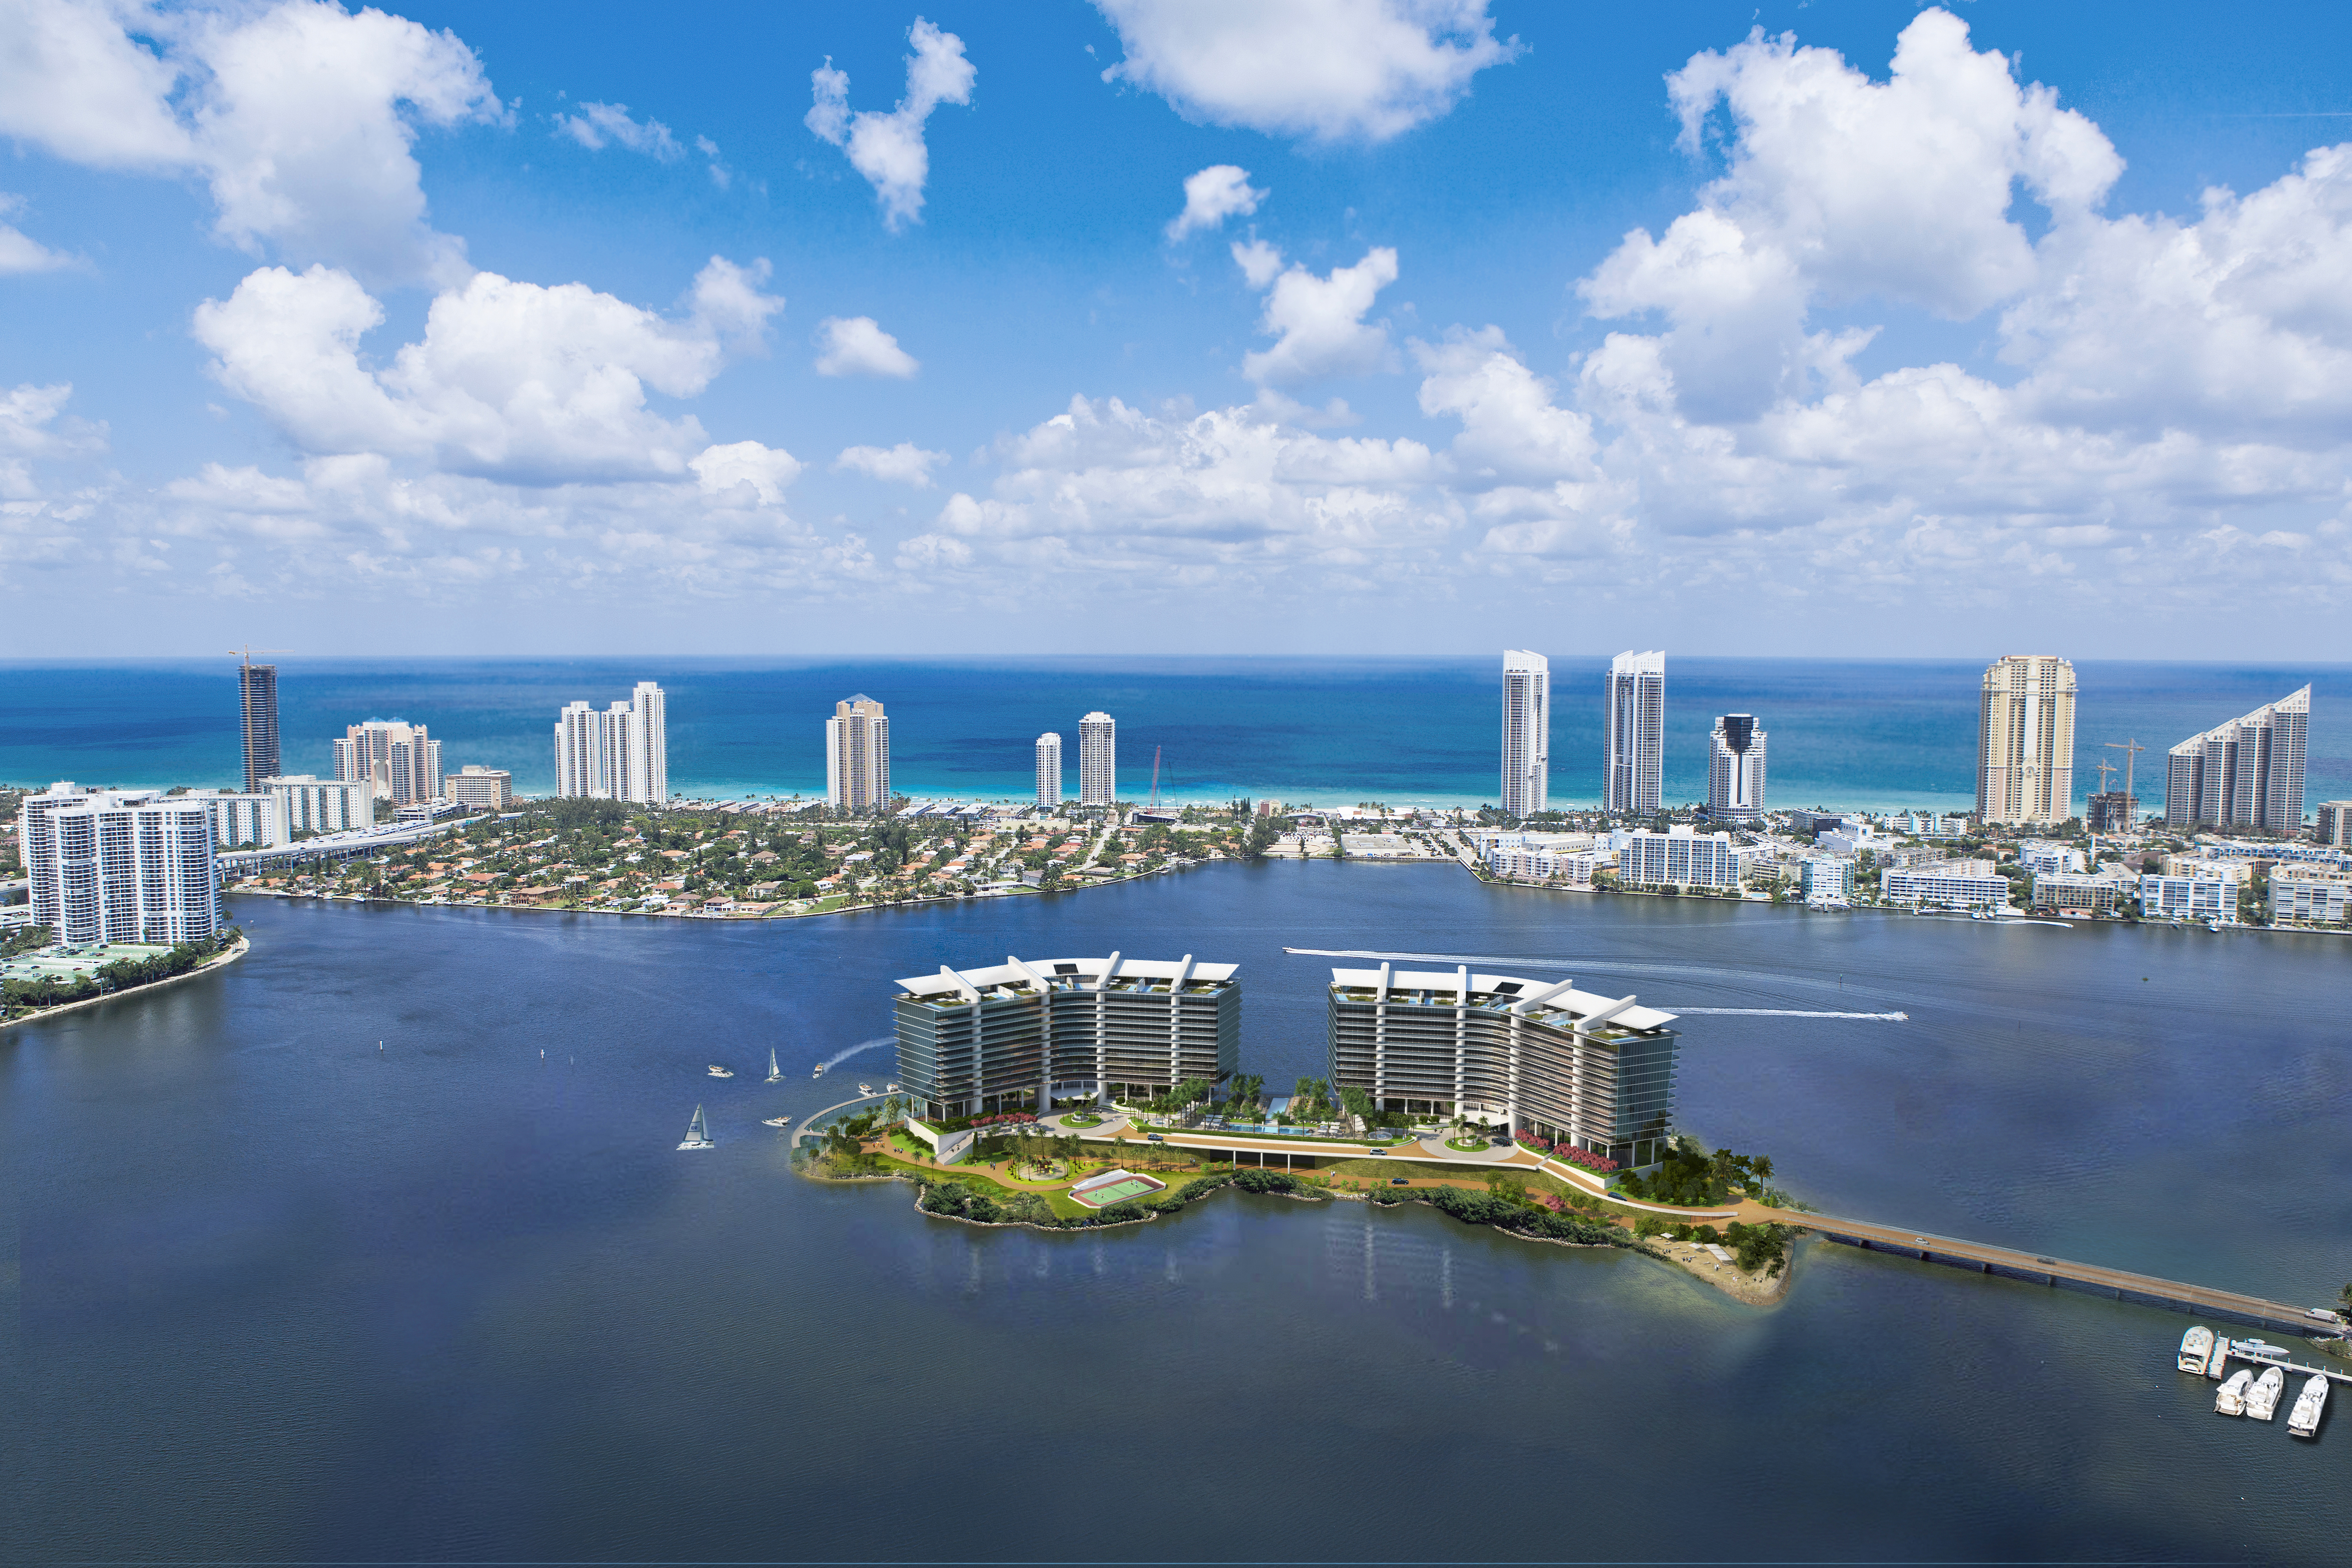 PRIVÉ – a Ilha dos sonhos em Miami